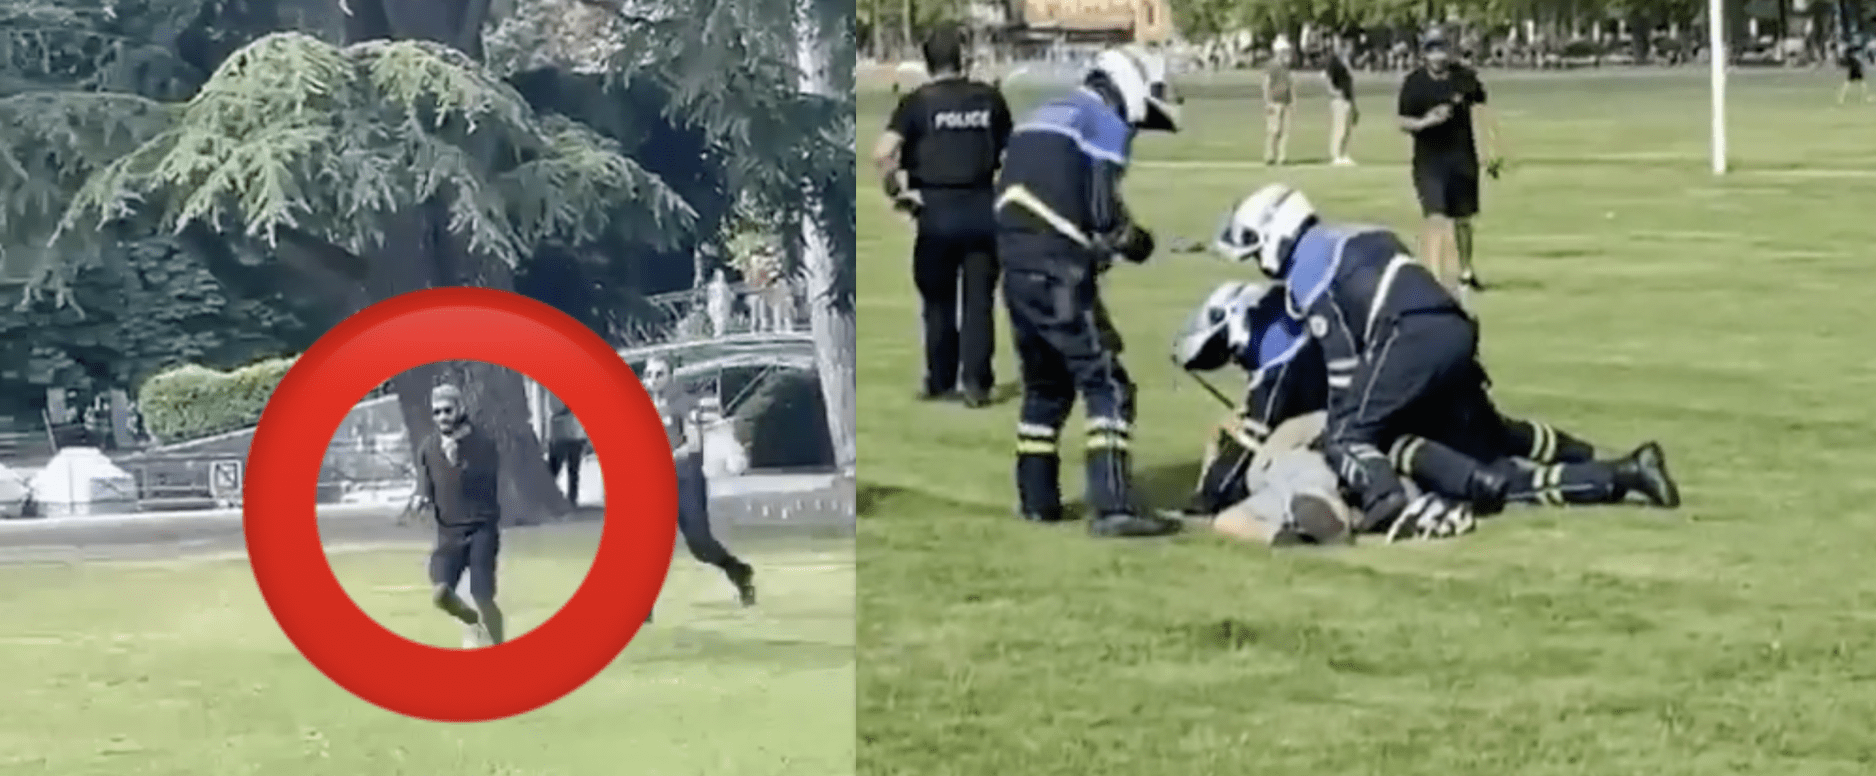 EXCLUSIF : vidéo de l’attaque au couteau d’Annecy, plusieurs enfants blessés, un homme interpellé